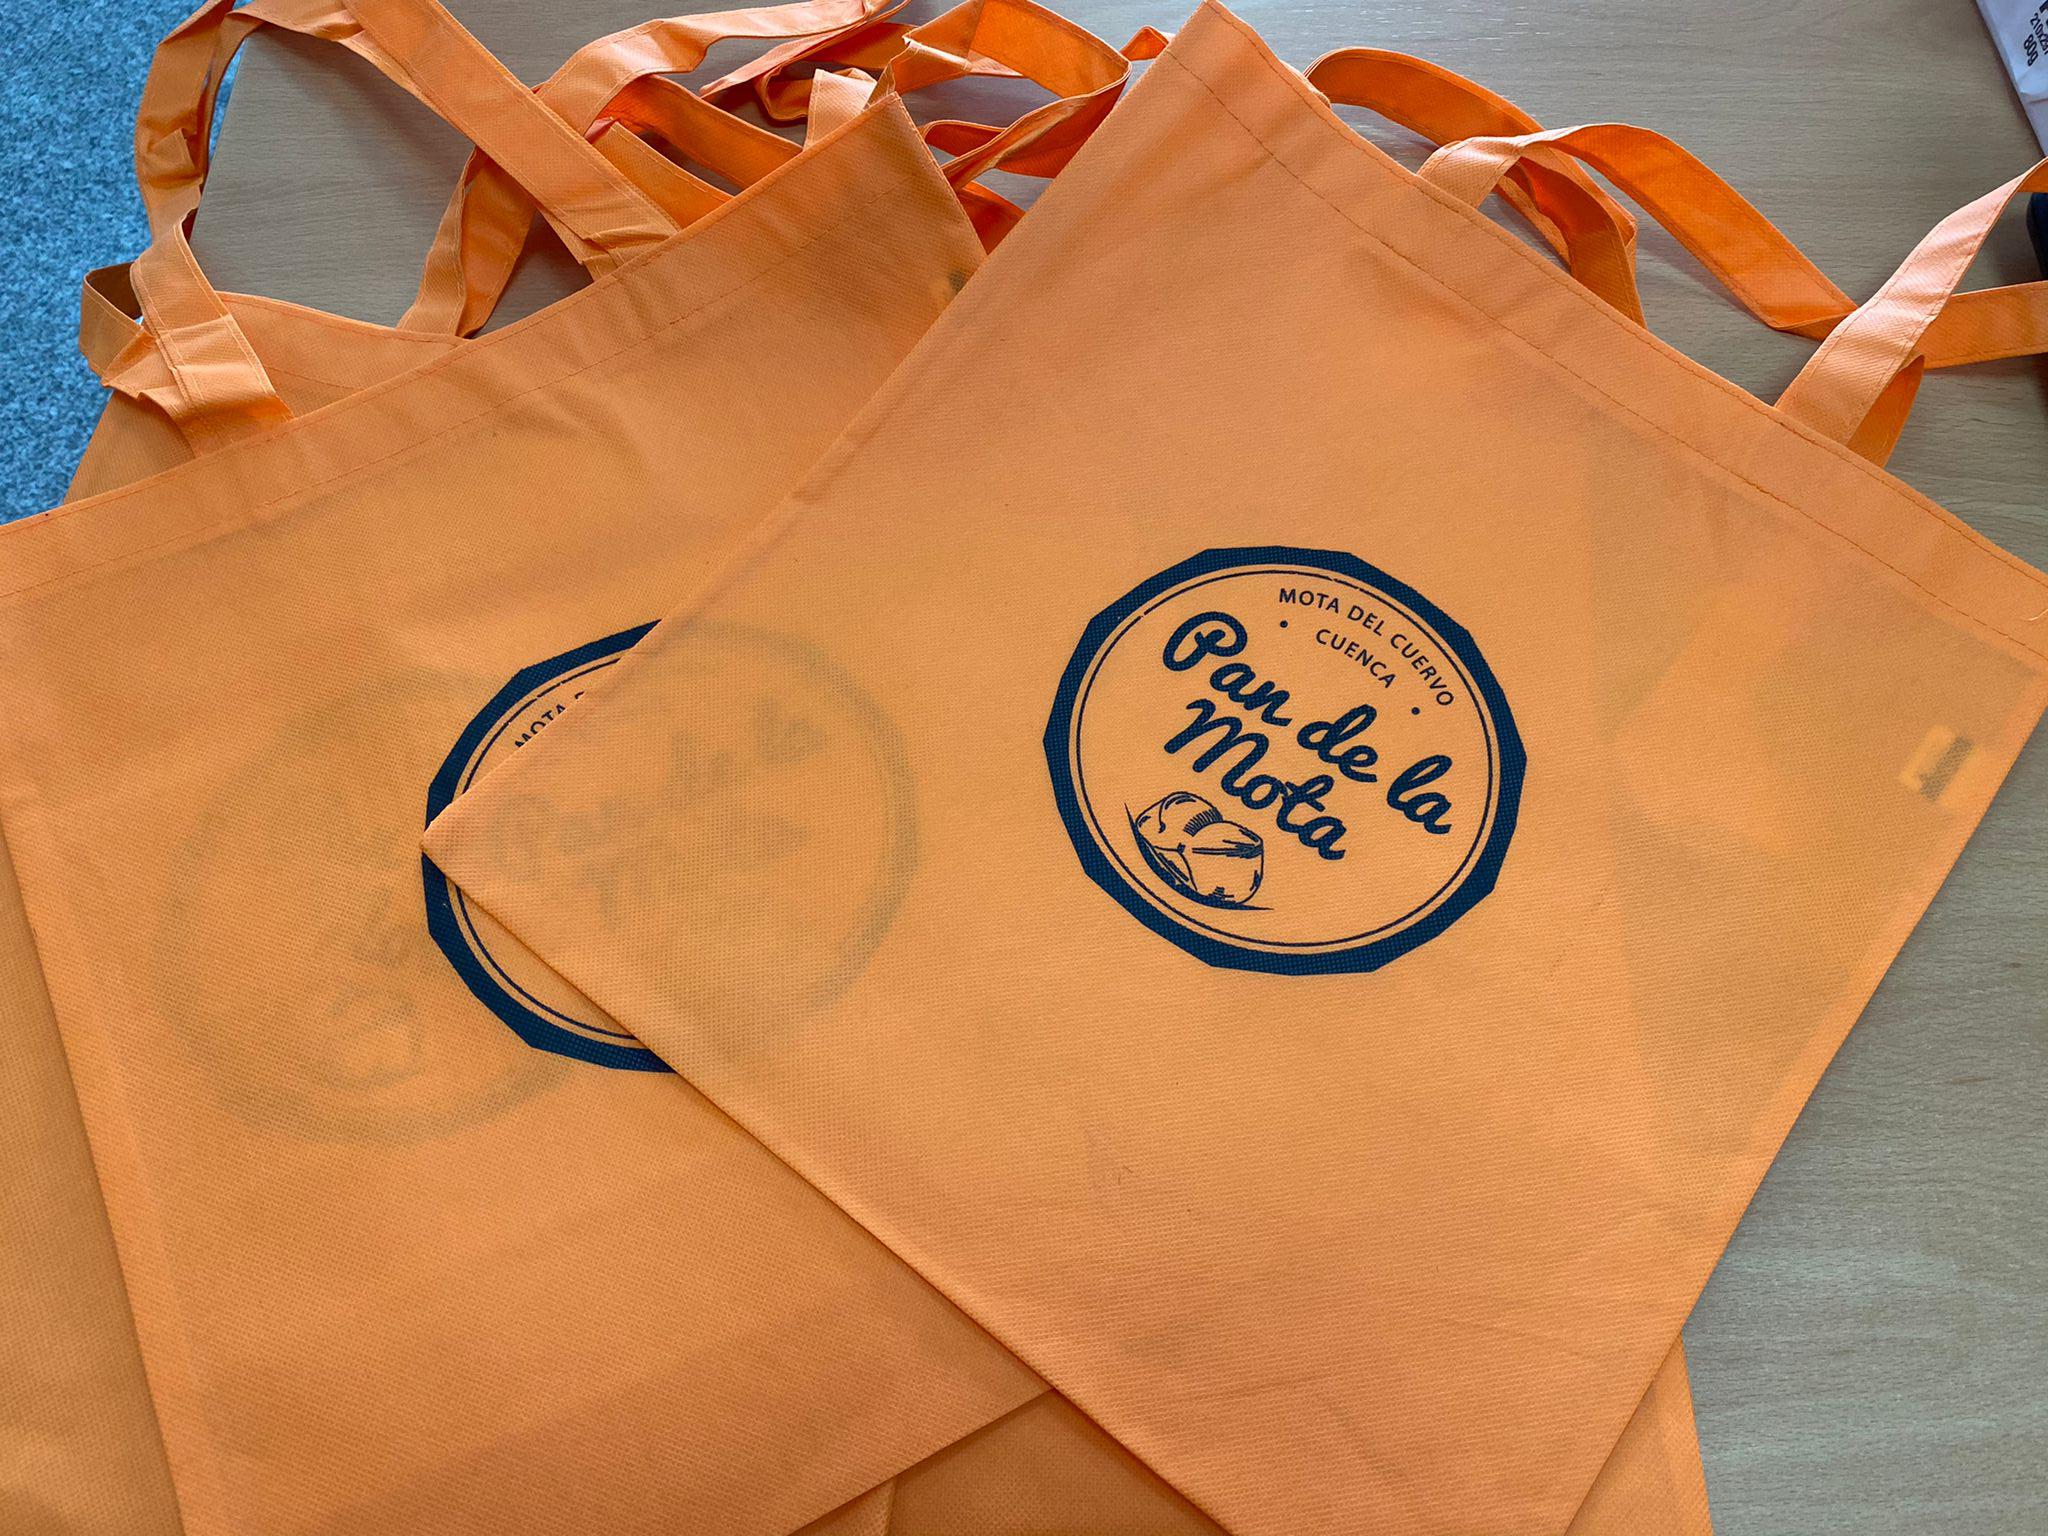 El Ayuntamiento de Mota continúa con su campaña de promoción de la marca “Pan de la Mota” con la edición de bolsas reutilizables